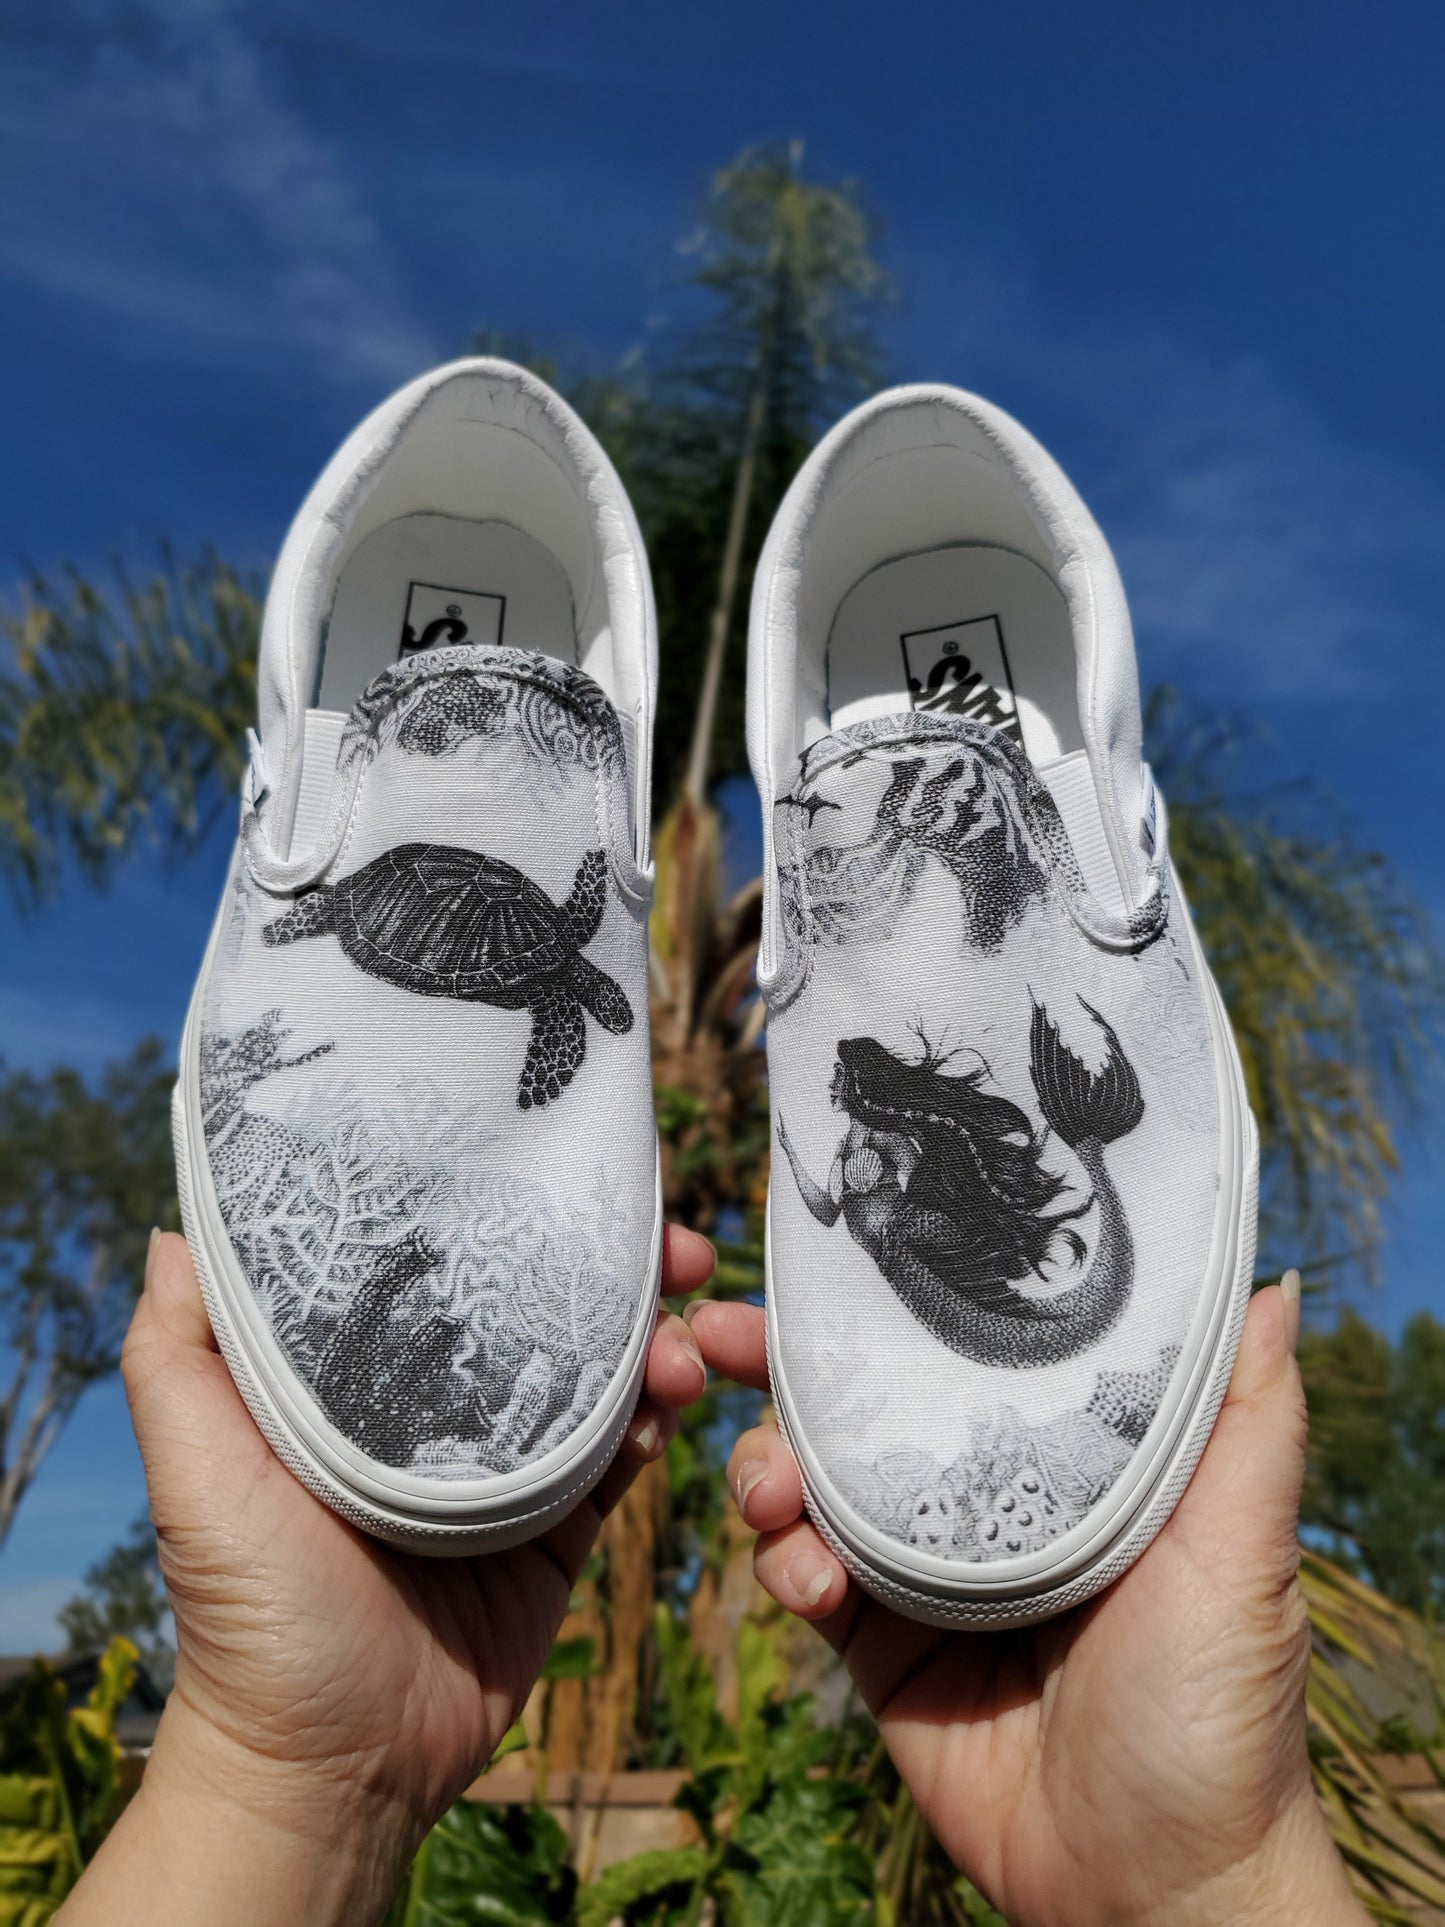 Dream of a Reef Slip On Vans - Black & White Vans - Custom Vans Shoes